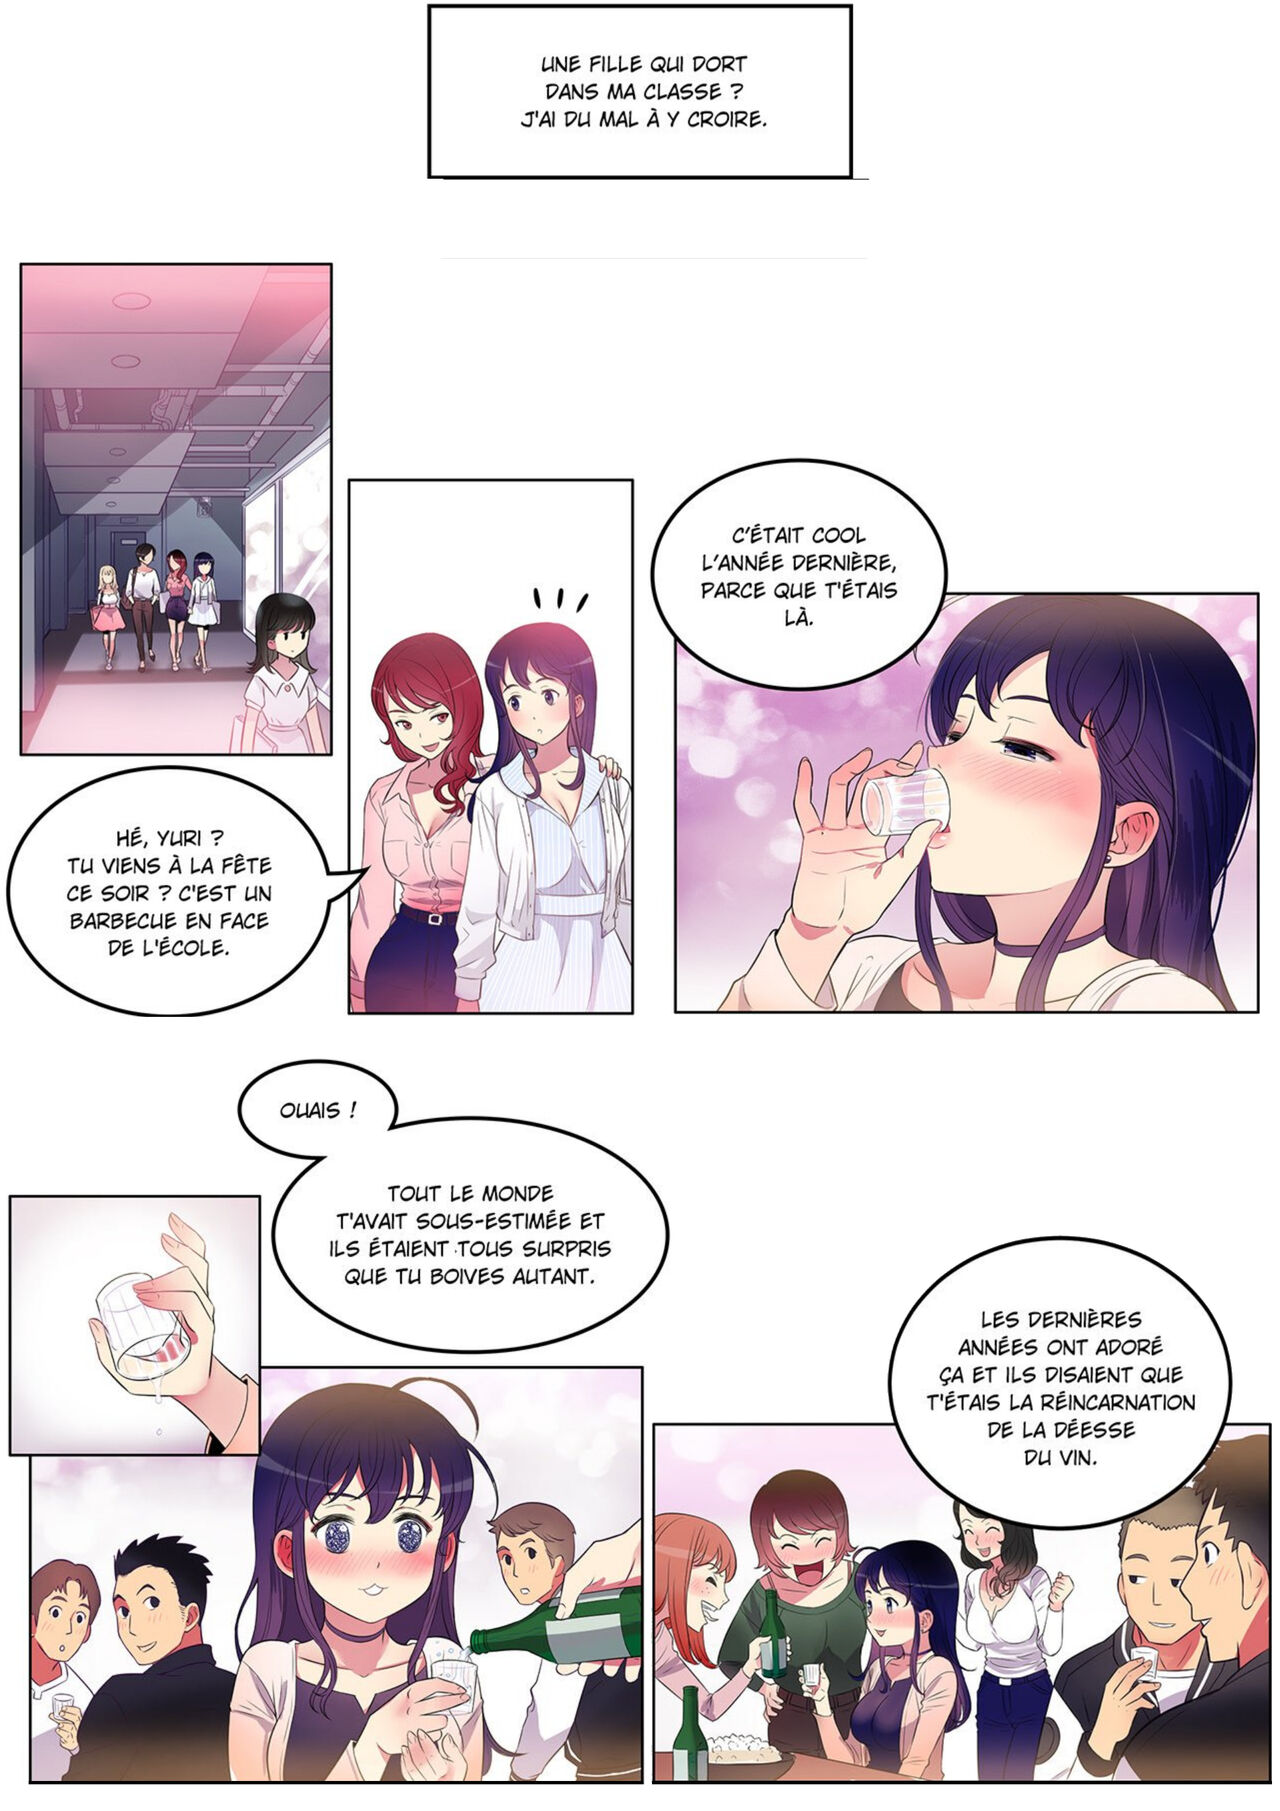 La double vie de Yuri numero d'image 28